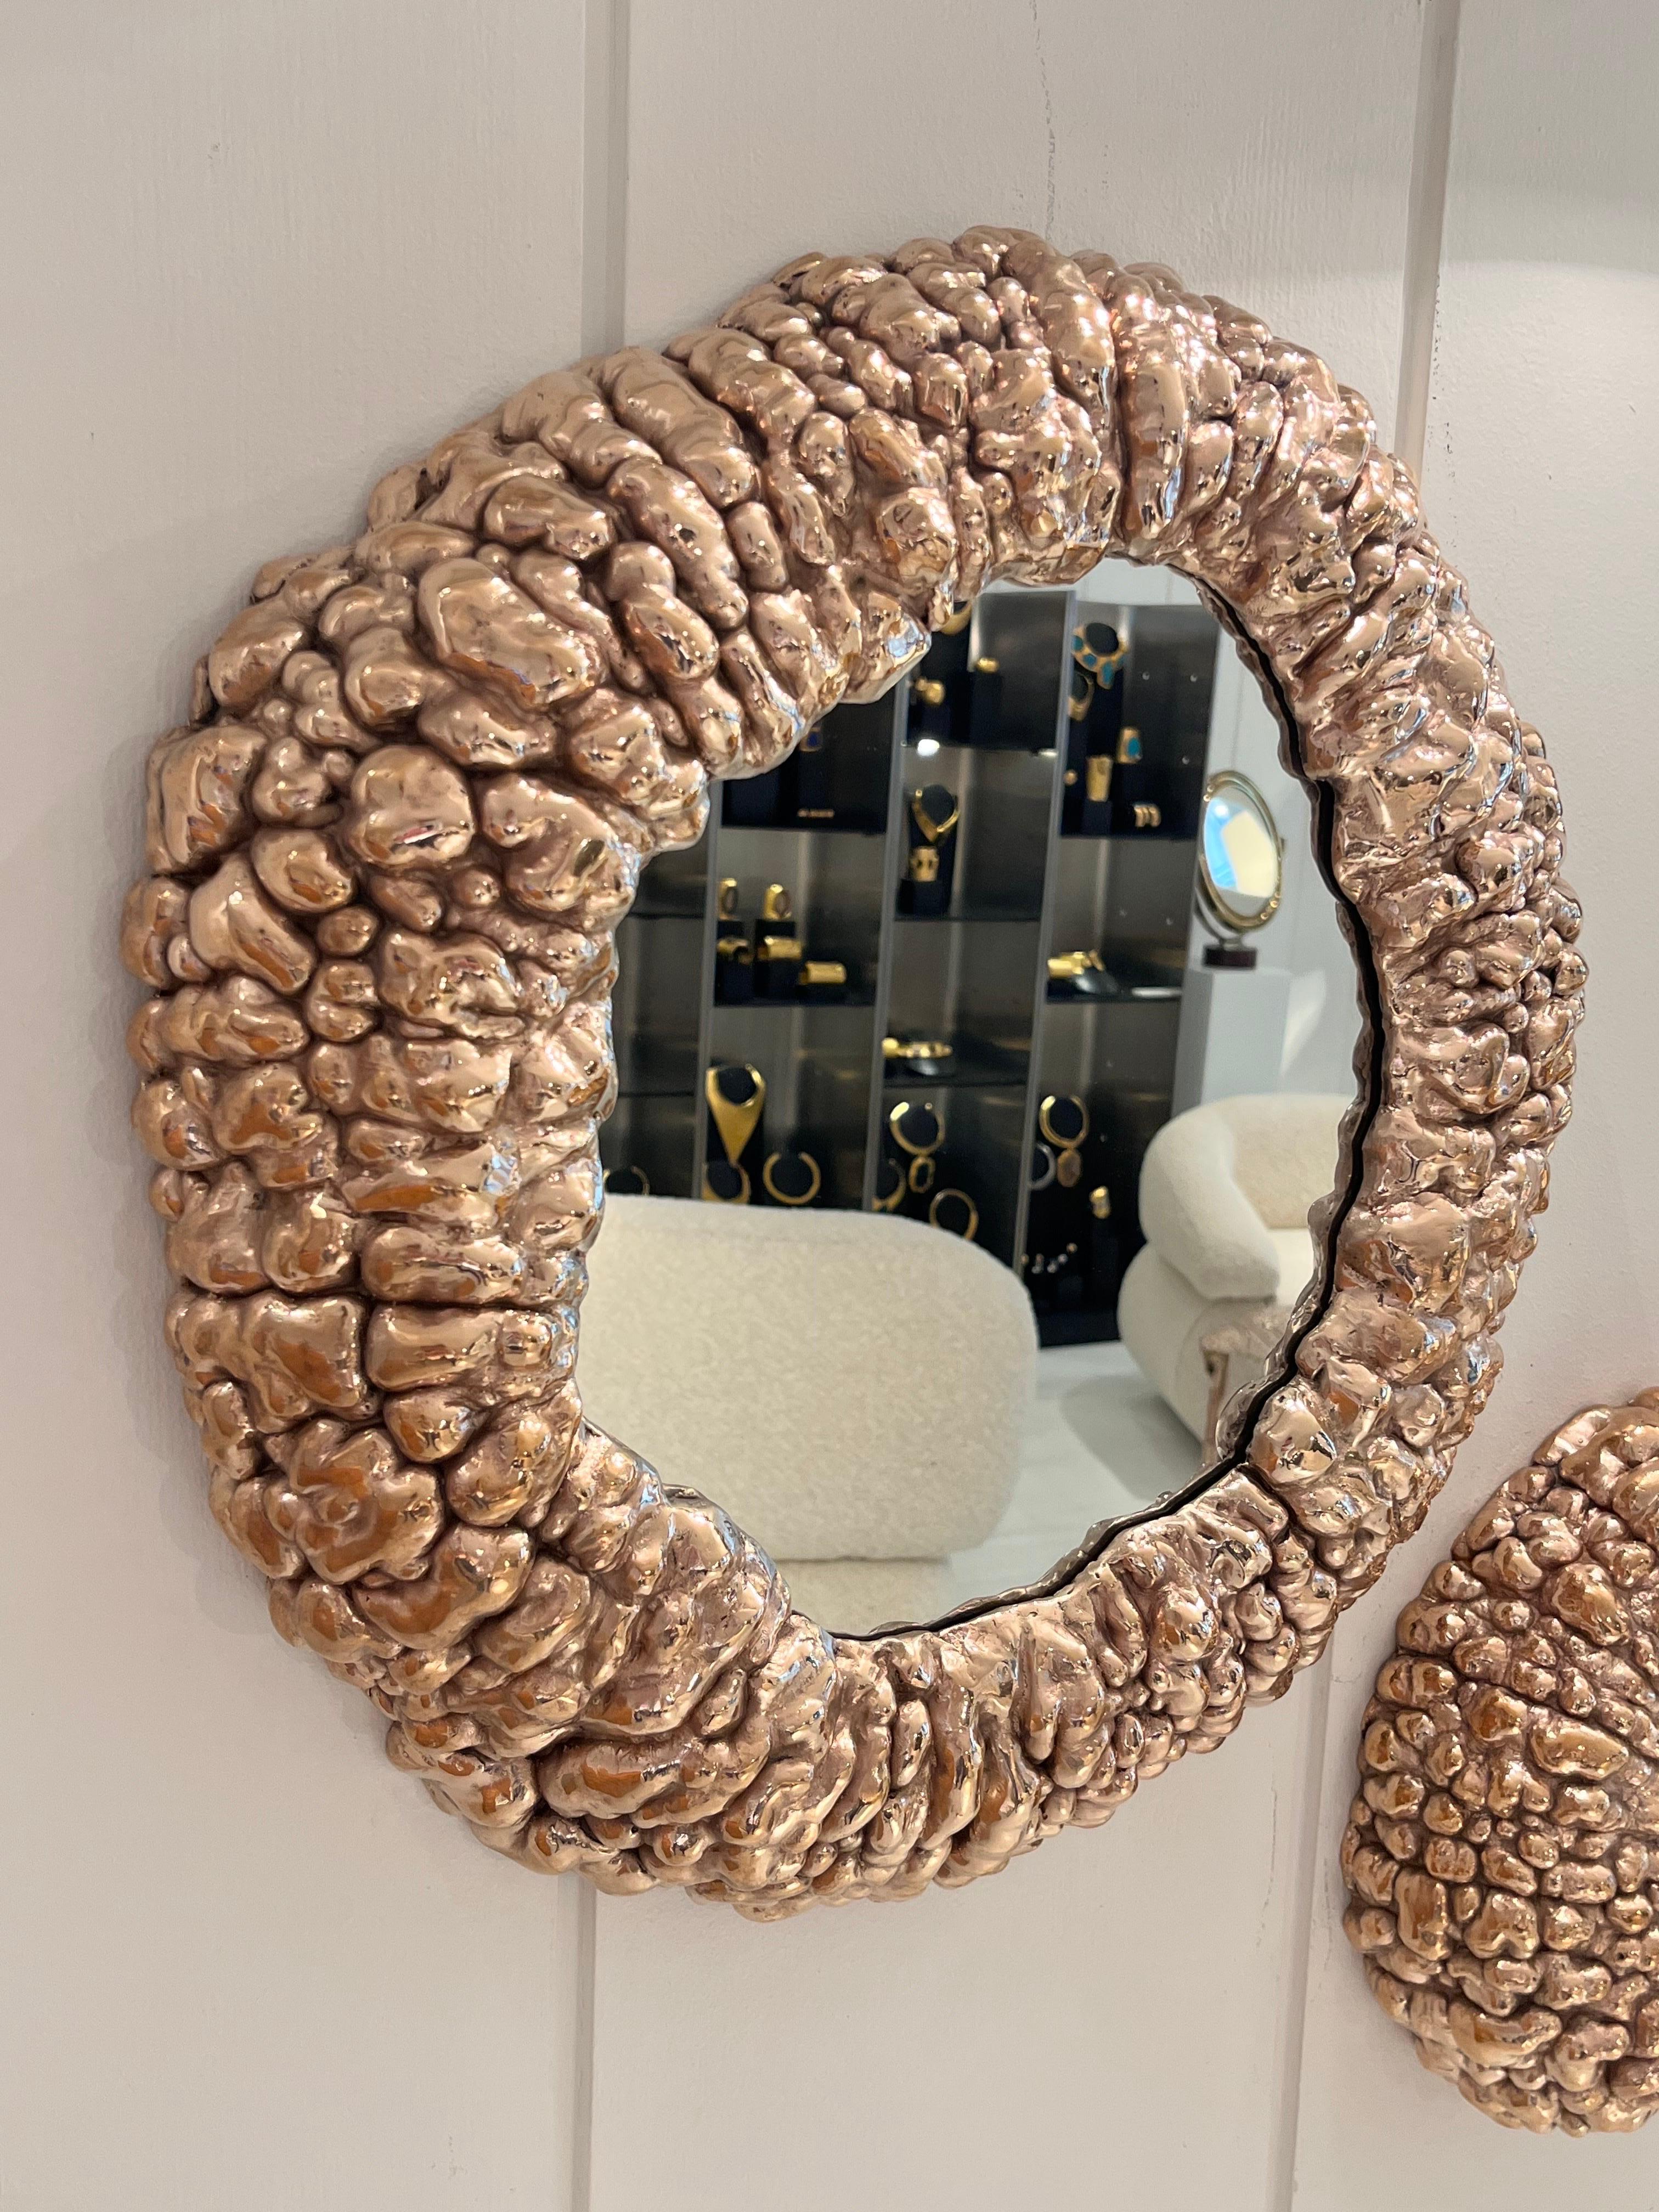 Clotilde Ancarani
Gilded bronze mirrors
Large Buble Mirror: 8 × 52 × 52 cm
Belgium